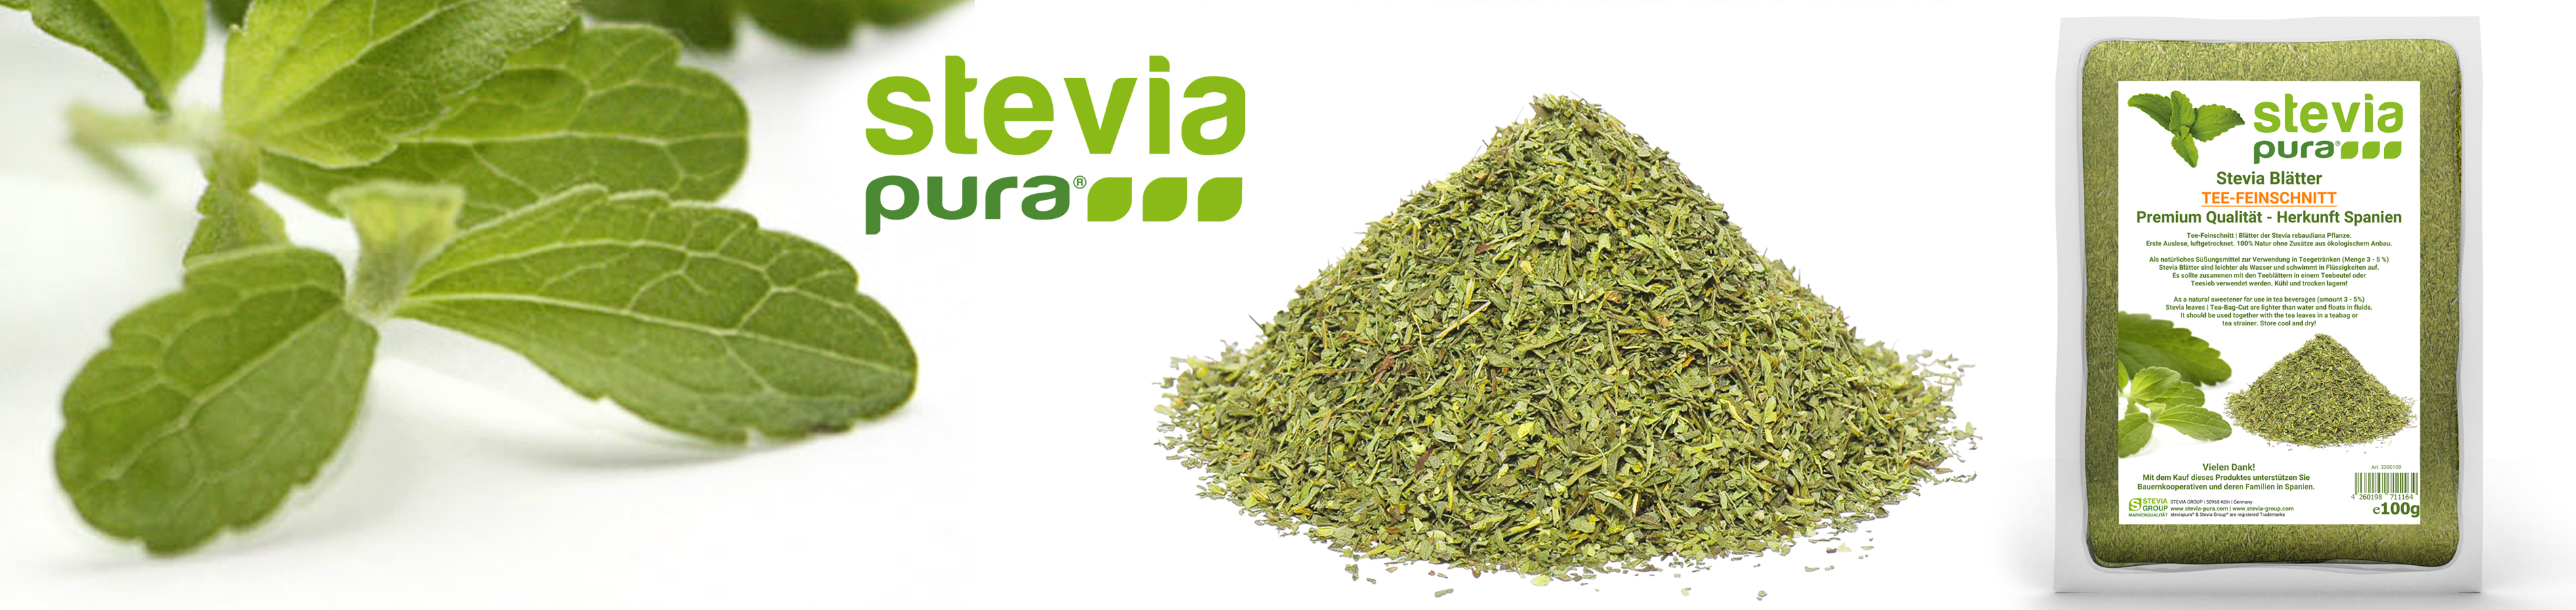 Bio Stevia Blätter Tee-Feinschnitt kaufen Stevia...